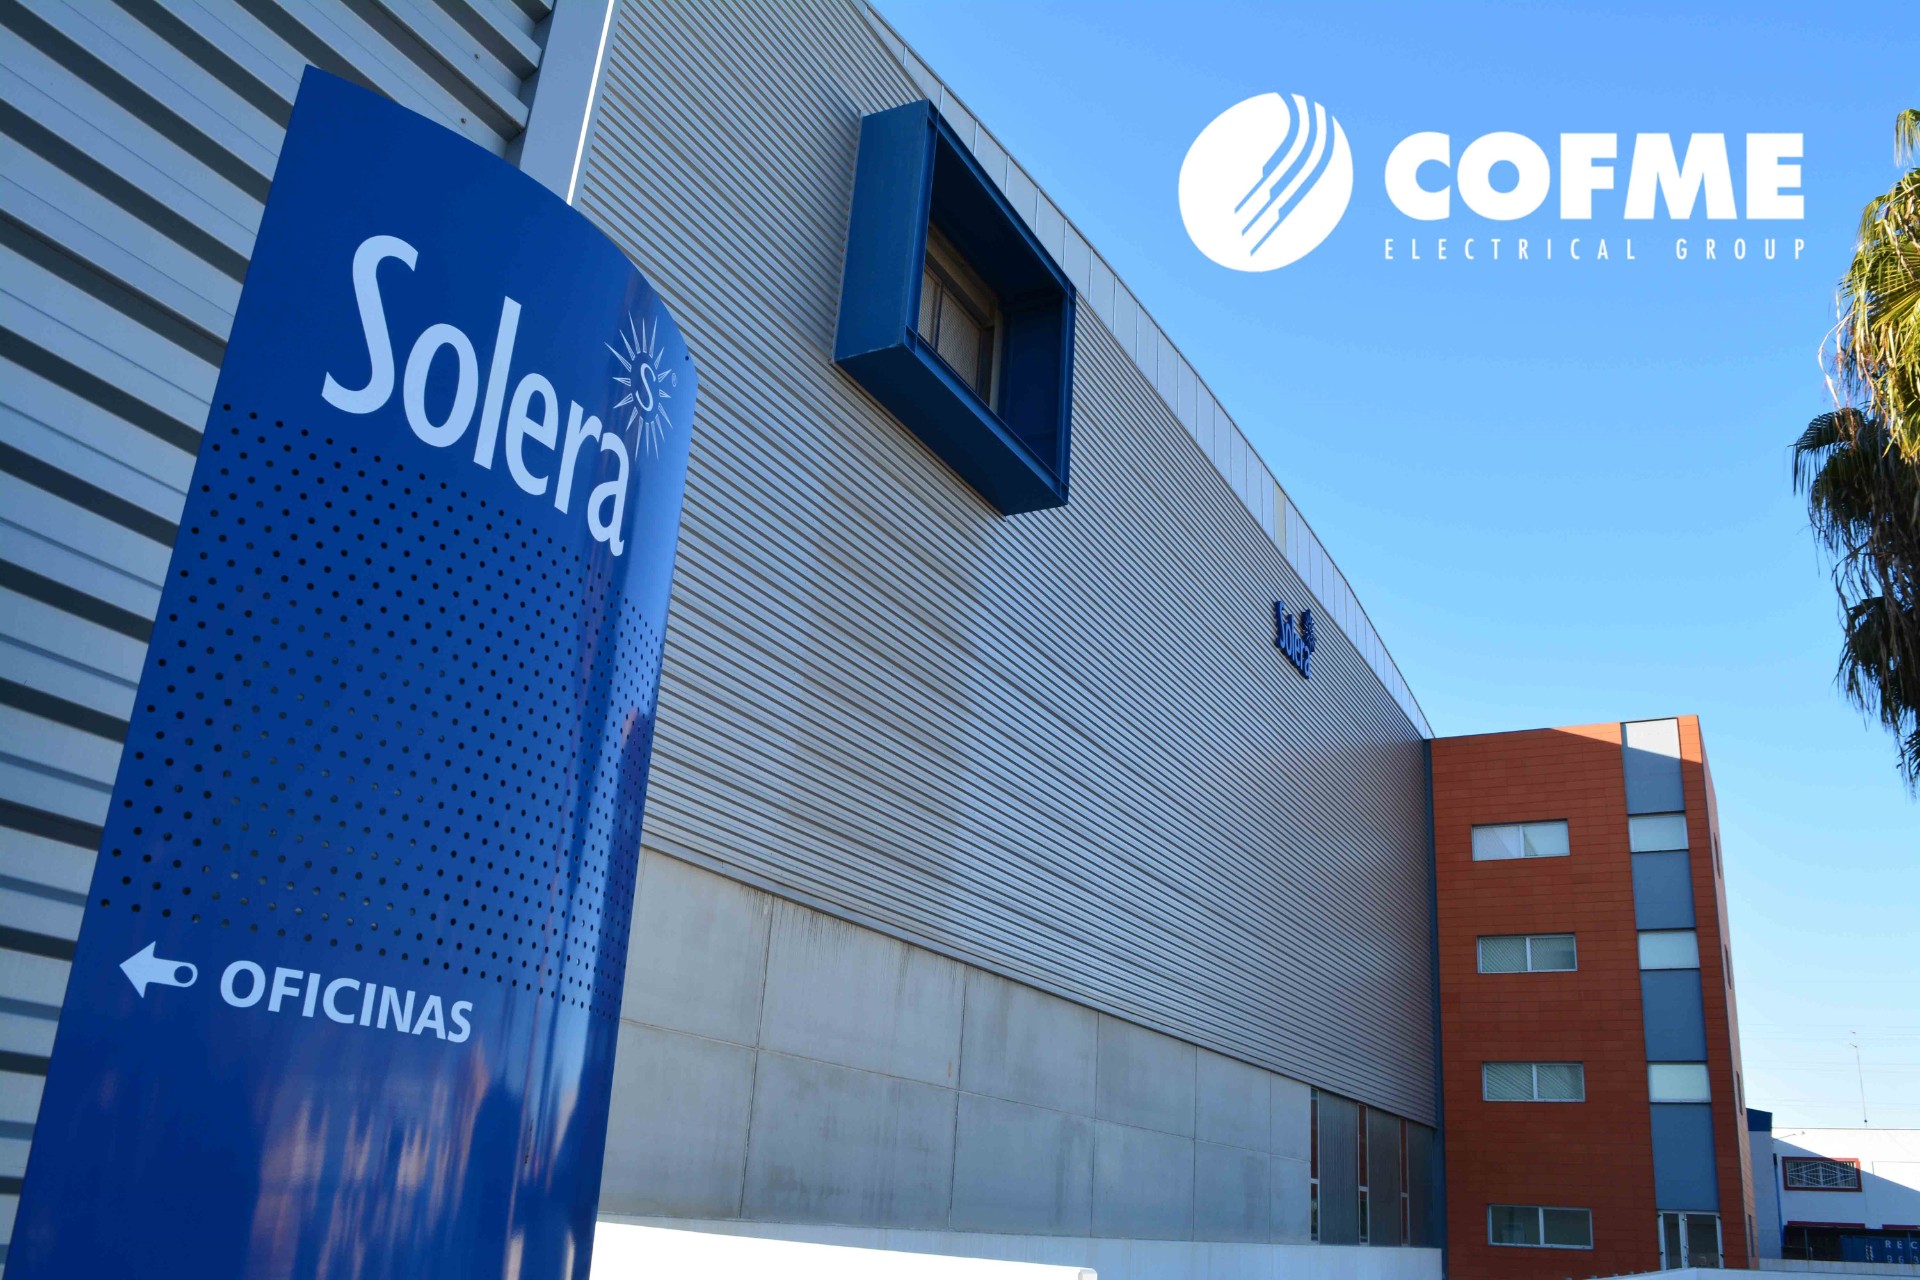 Solera a était incorporé à l'actionnariat de COFME